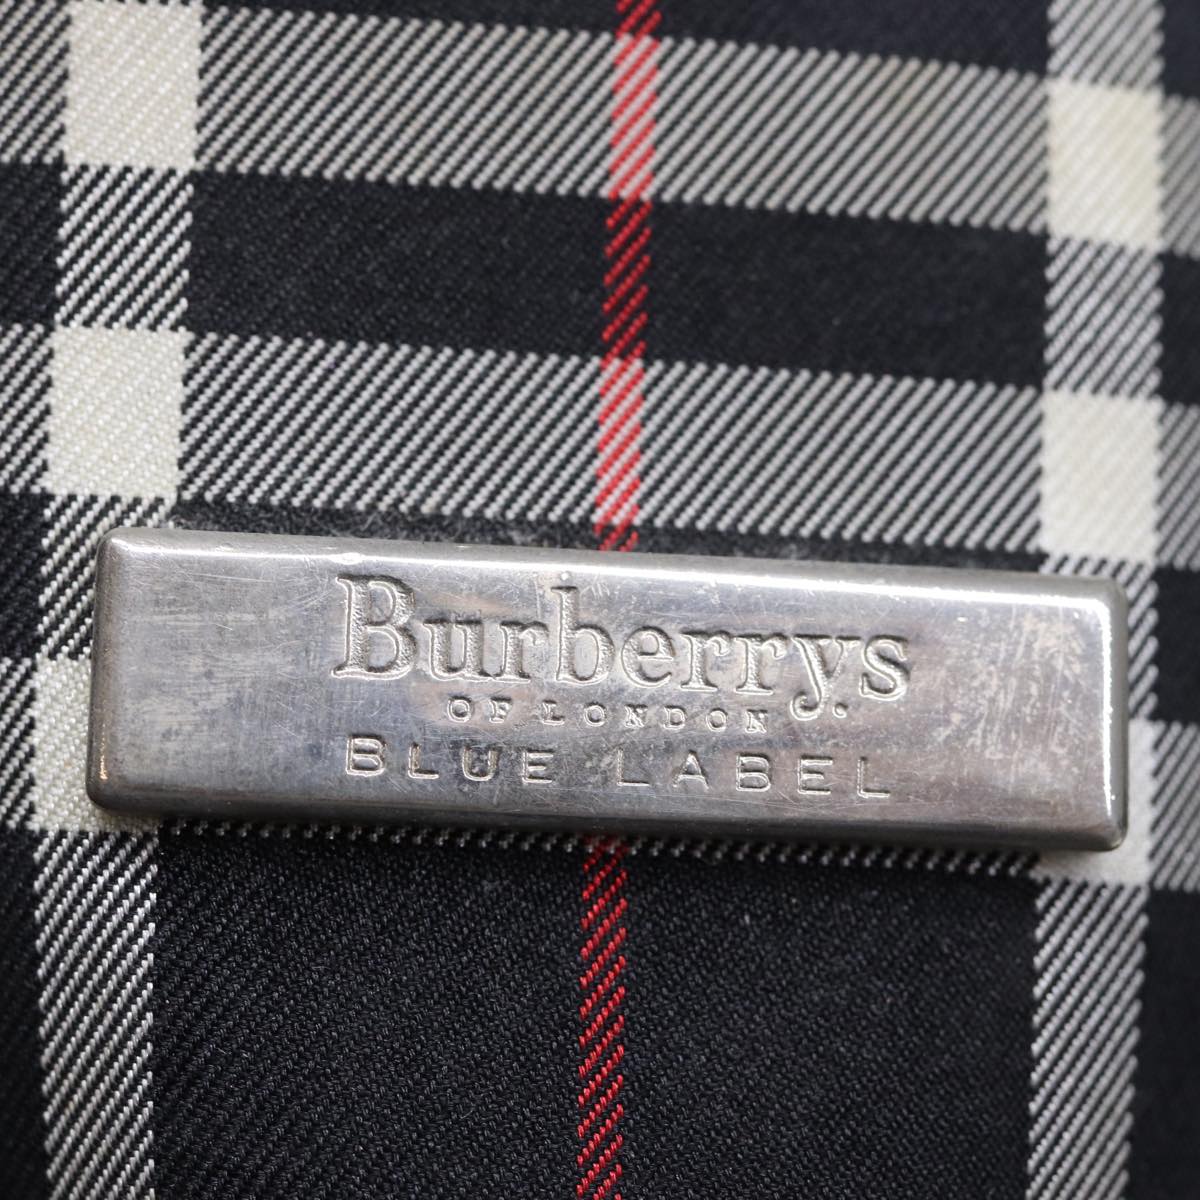 Burberrys Nova Check Blue Label Shoulder Bag Canvas Black Auth bs13816